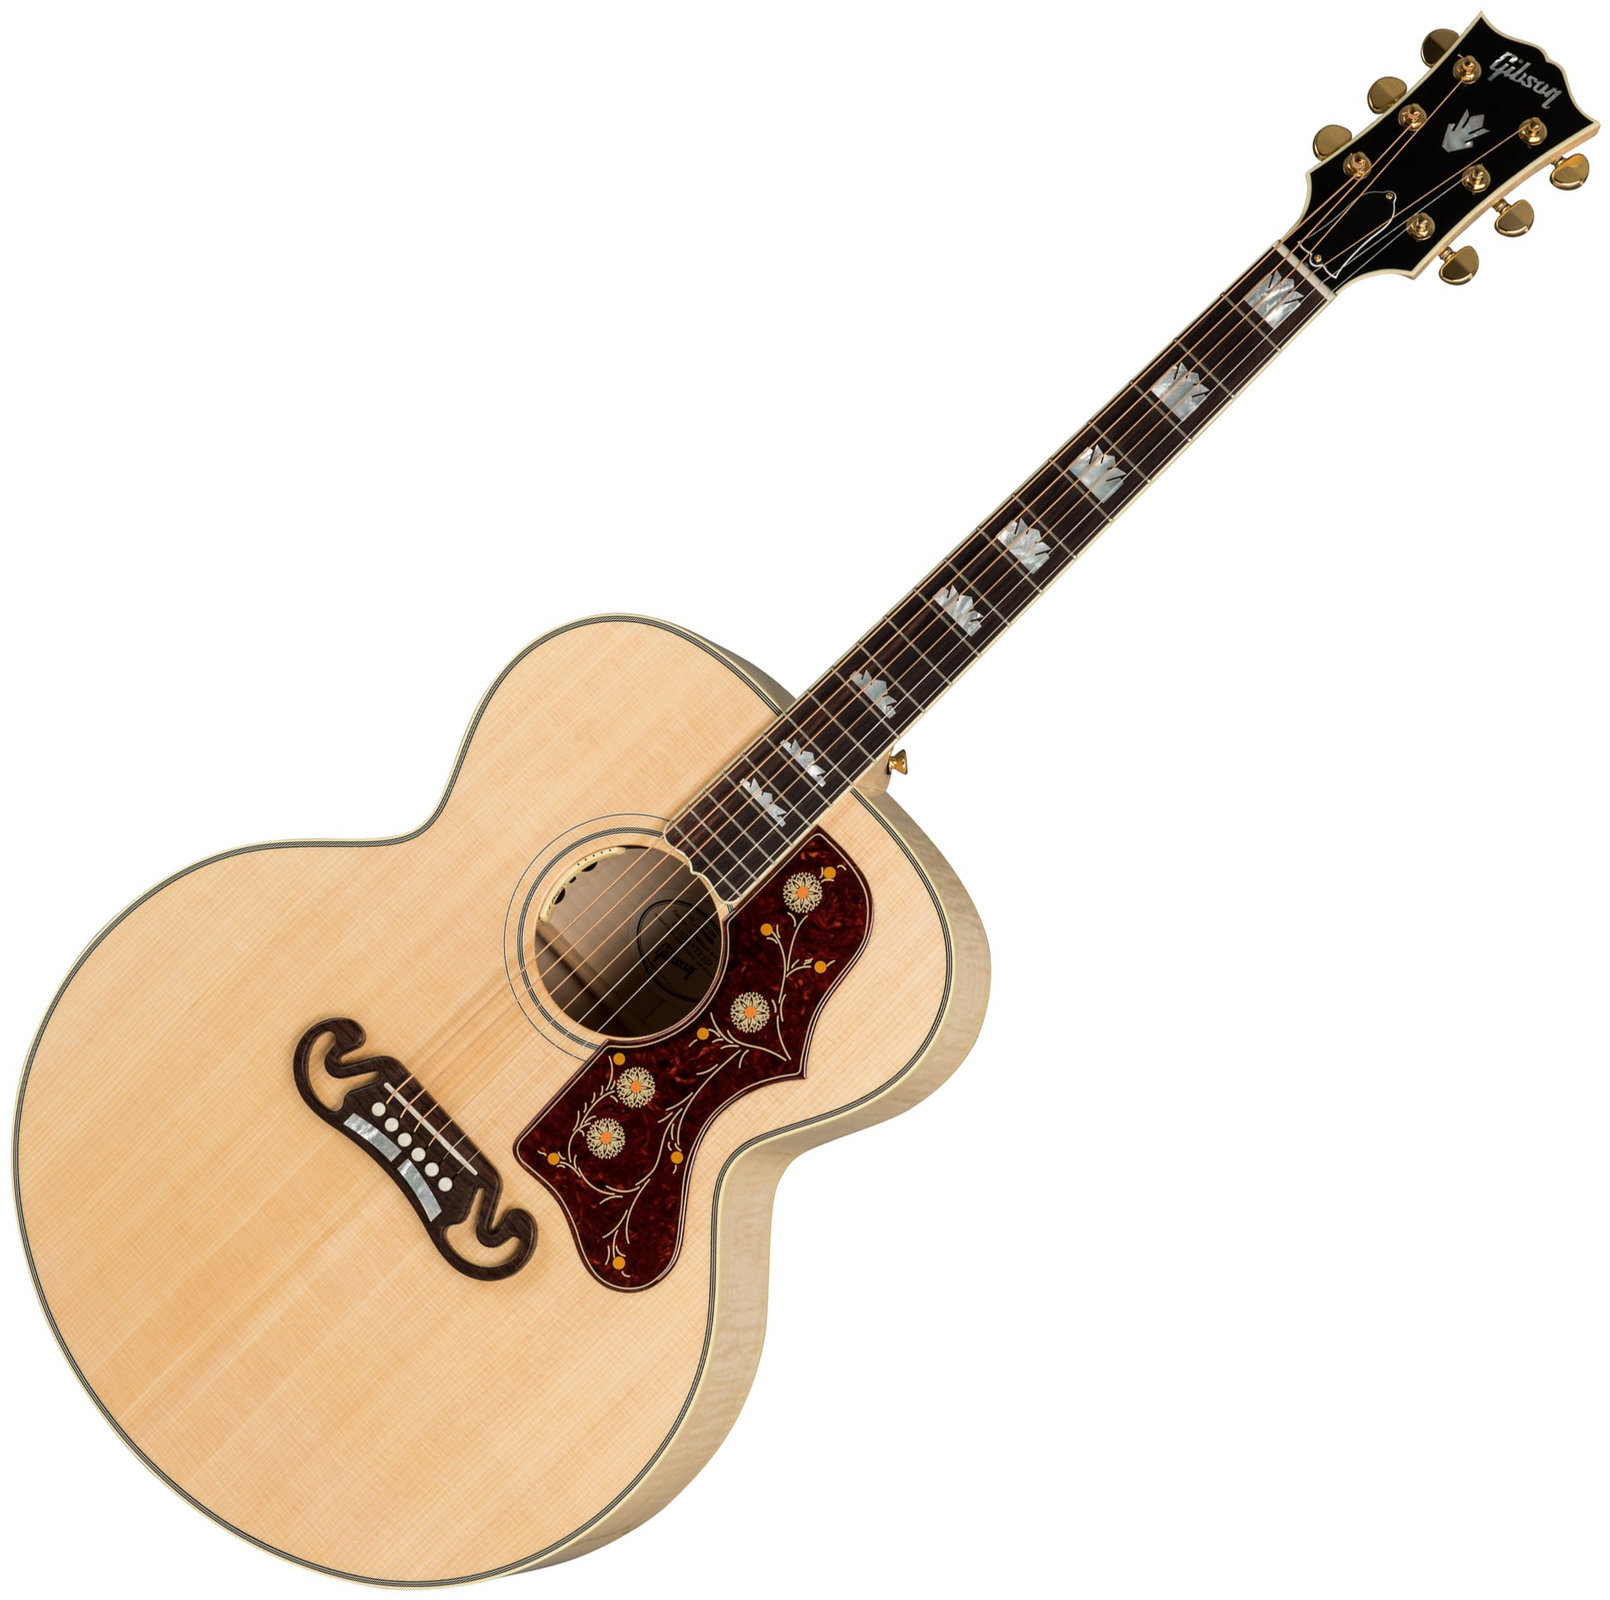 Jumbo elektro-akoestische gitaar Gibson J-200 Standard 2019 Antique Natural